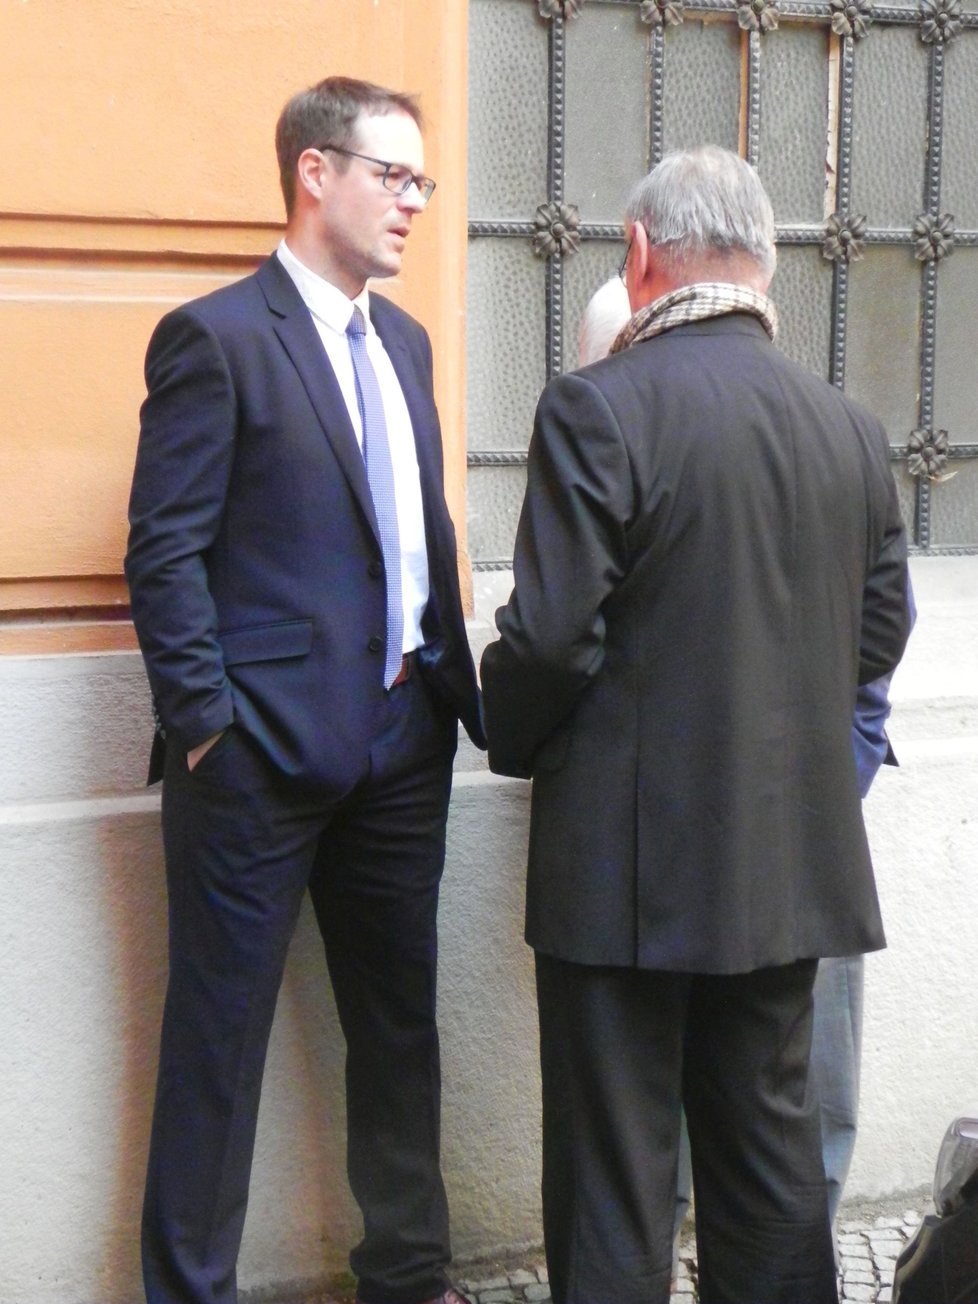 Žalobce Jiří Zemek (vlevo) obžaloval manžele z násilí vůči úřední osobě, obecného ohrožení a Vojtěcha B. i z pokusu o vraždu.